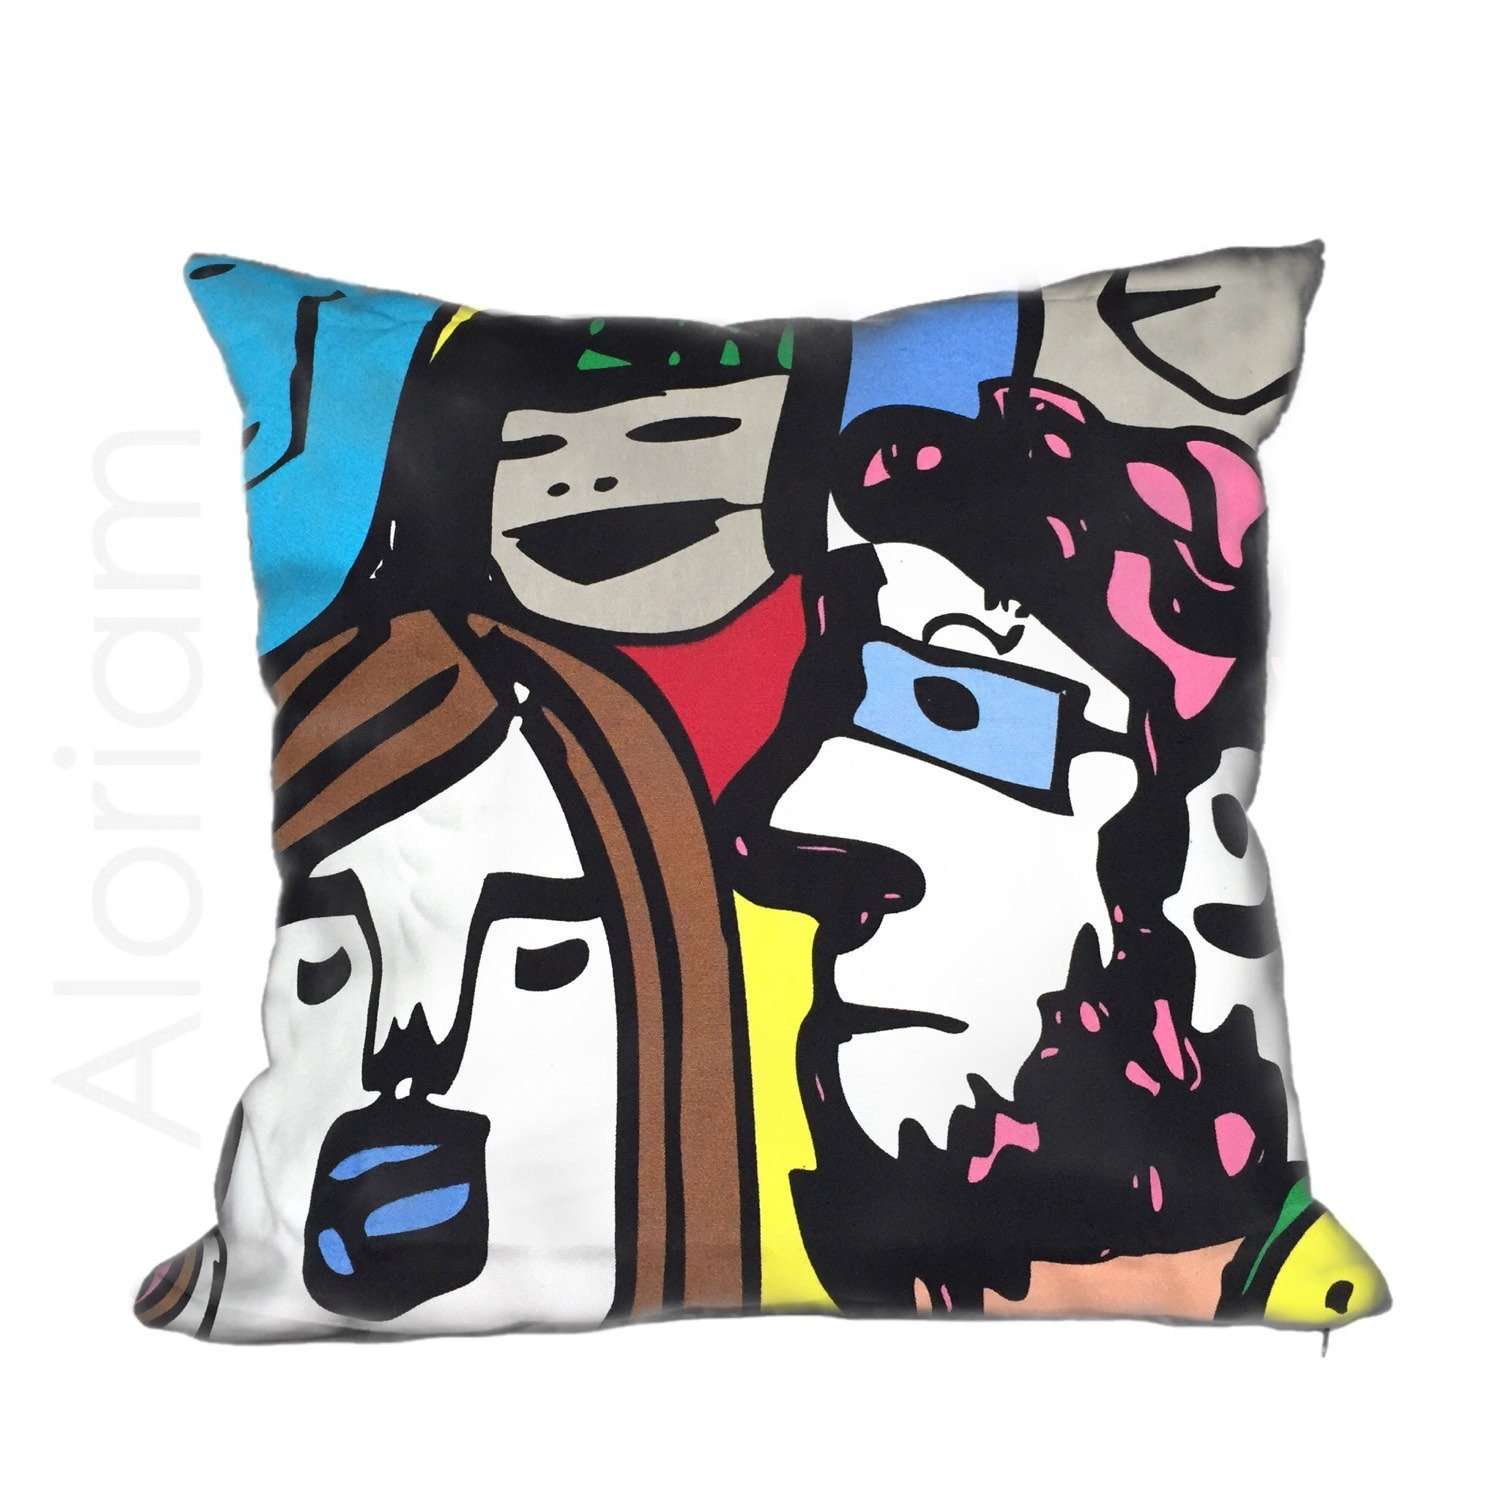 Pop Art Faces Bright Multicolor Cotton Pillow Cushion Cover